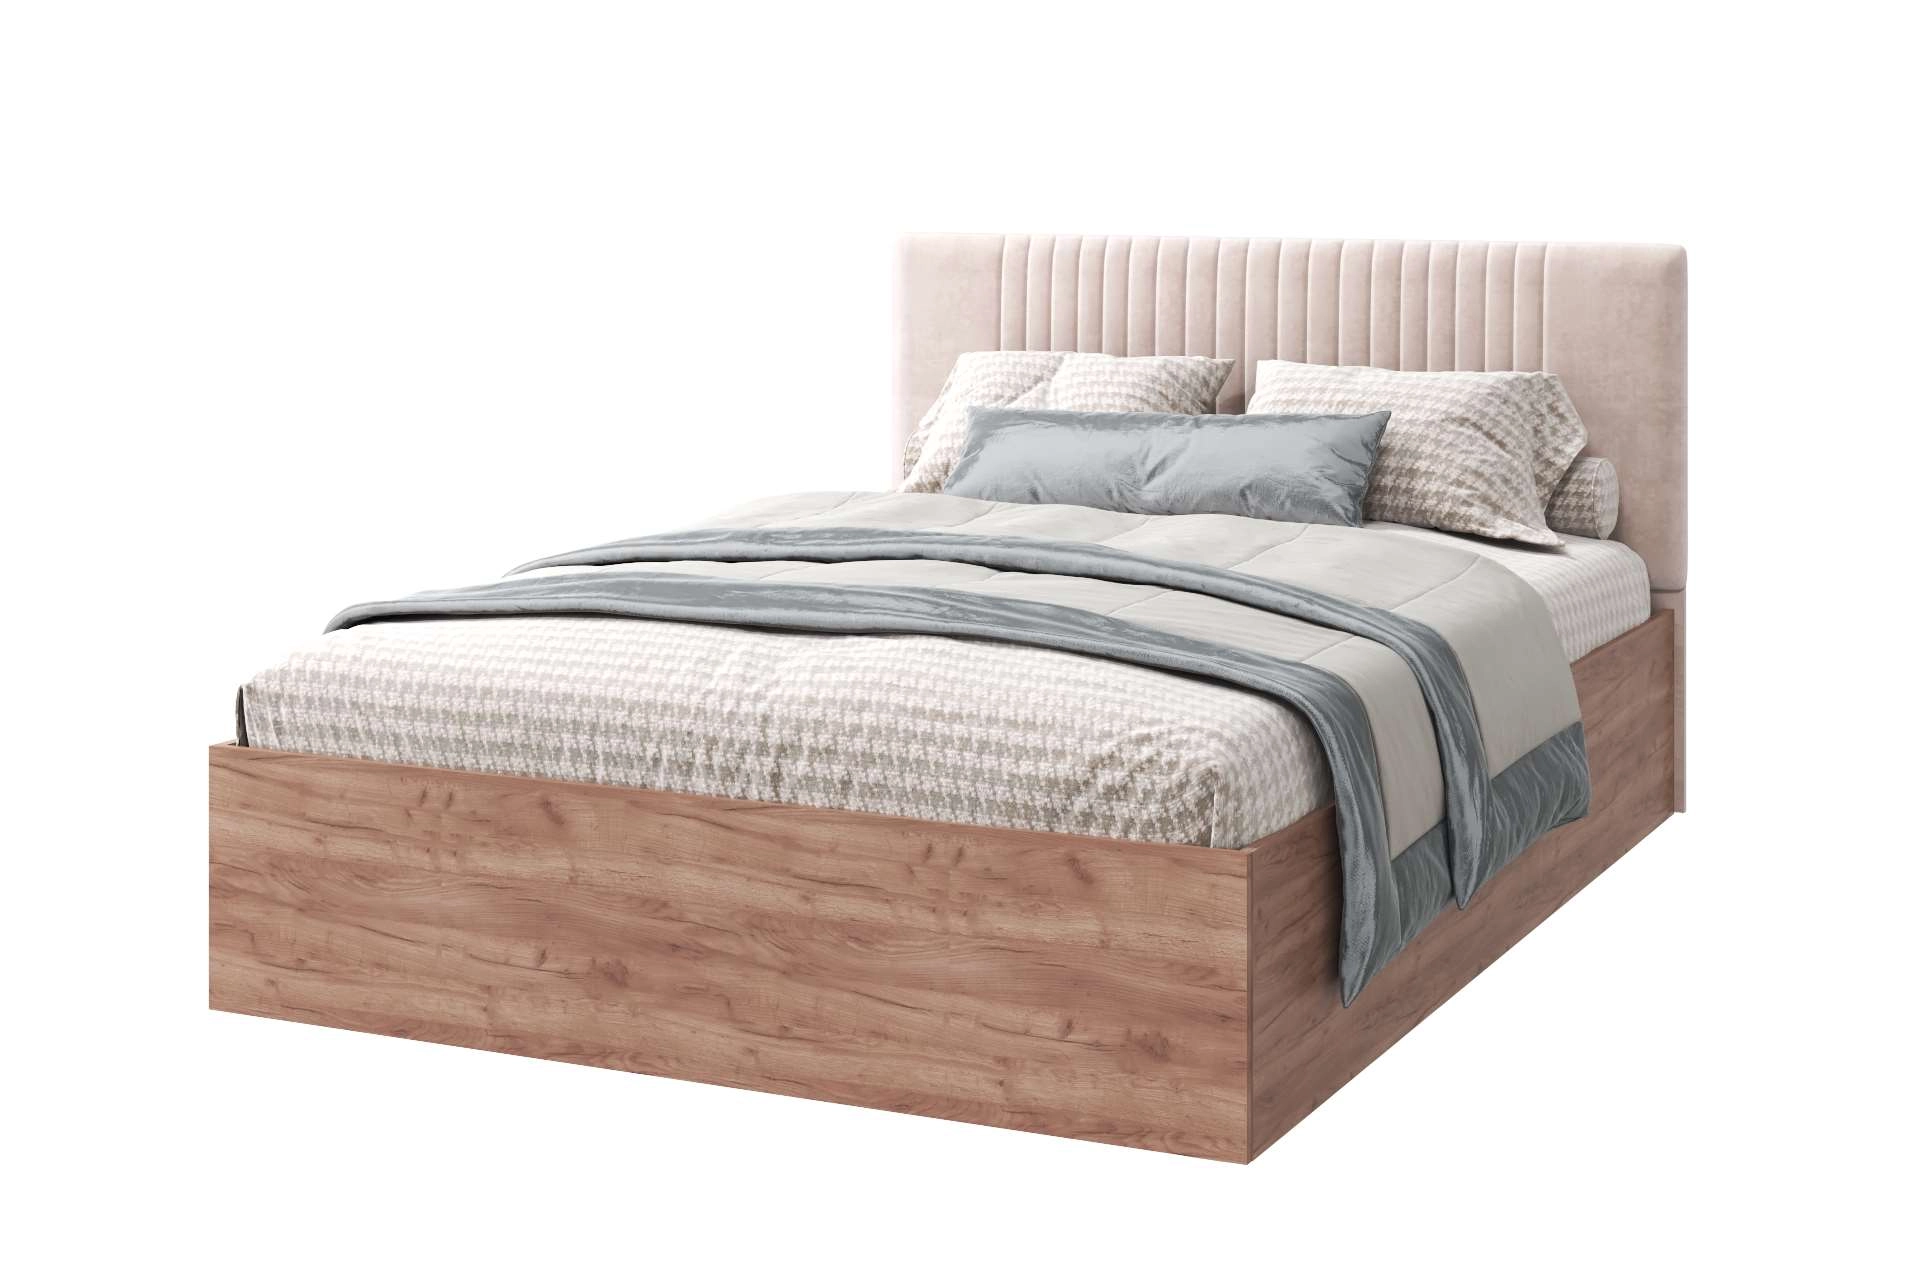 Кровать Тоскана 160х200 см.